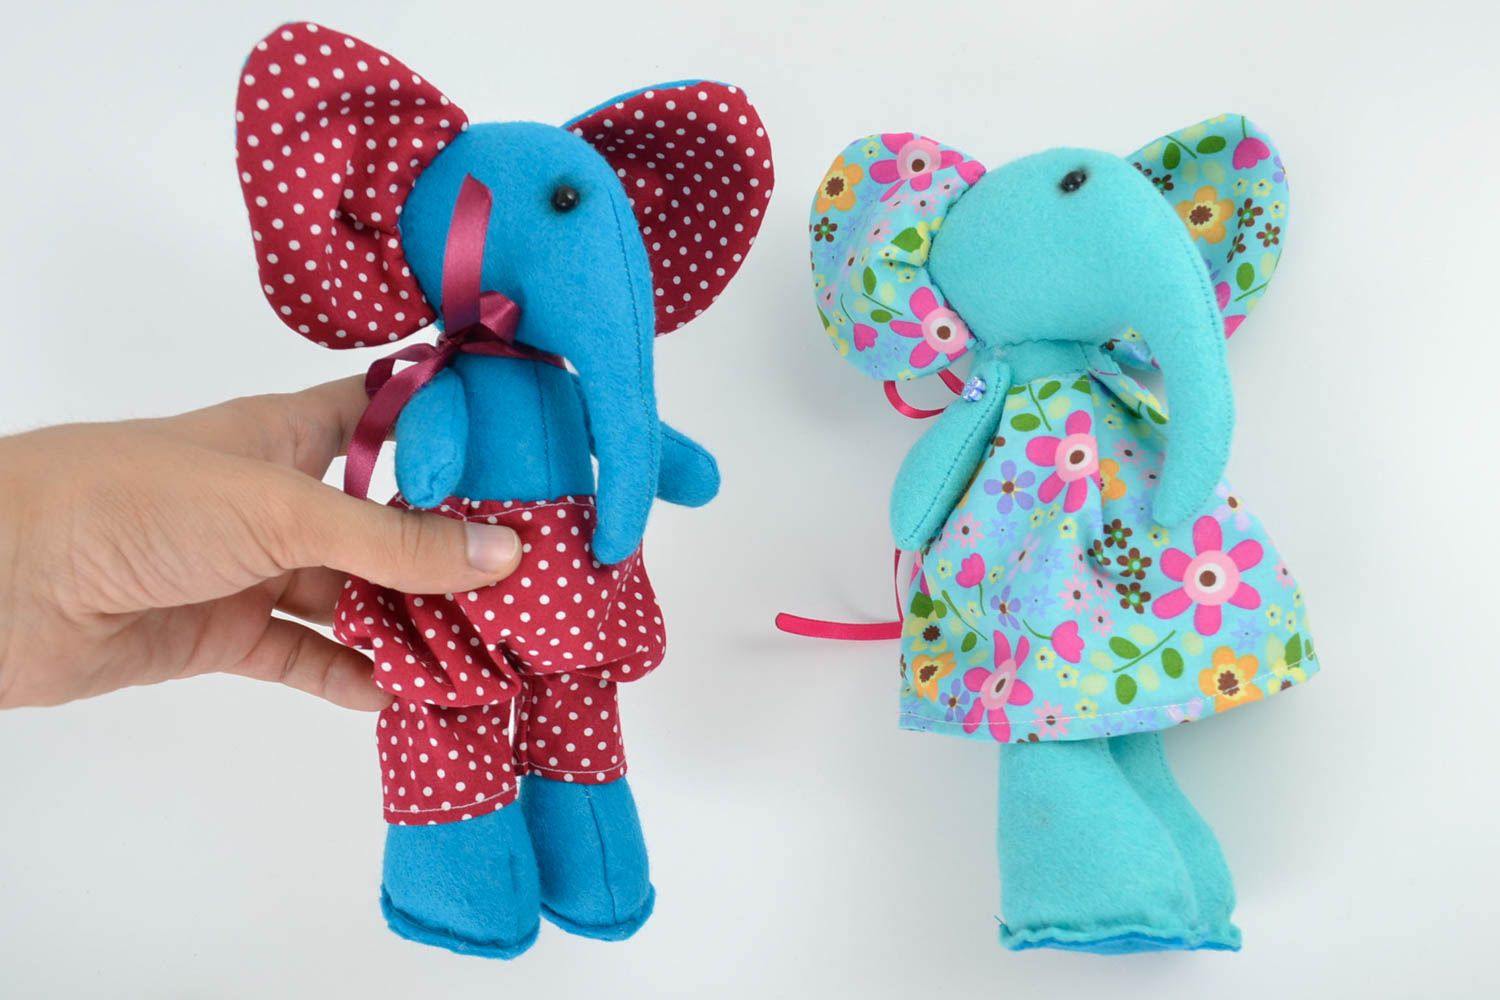 Мягкие игрушки набор слонов 2 штуки ручной работы из ткани авторские для детей фото 5